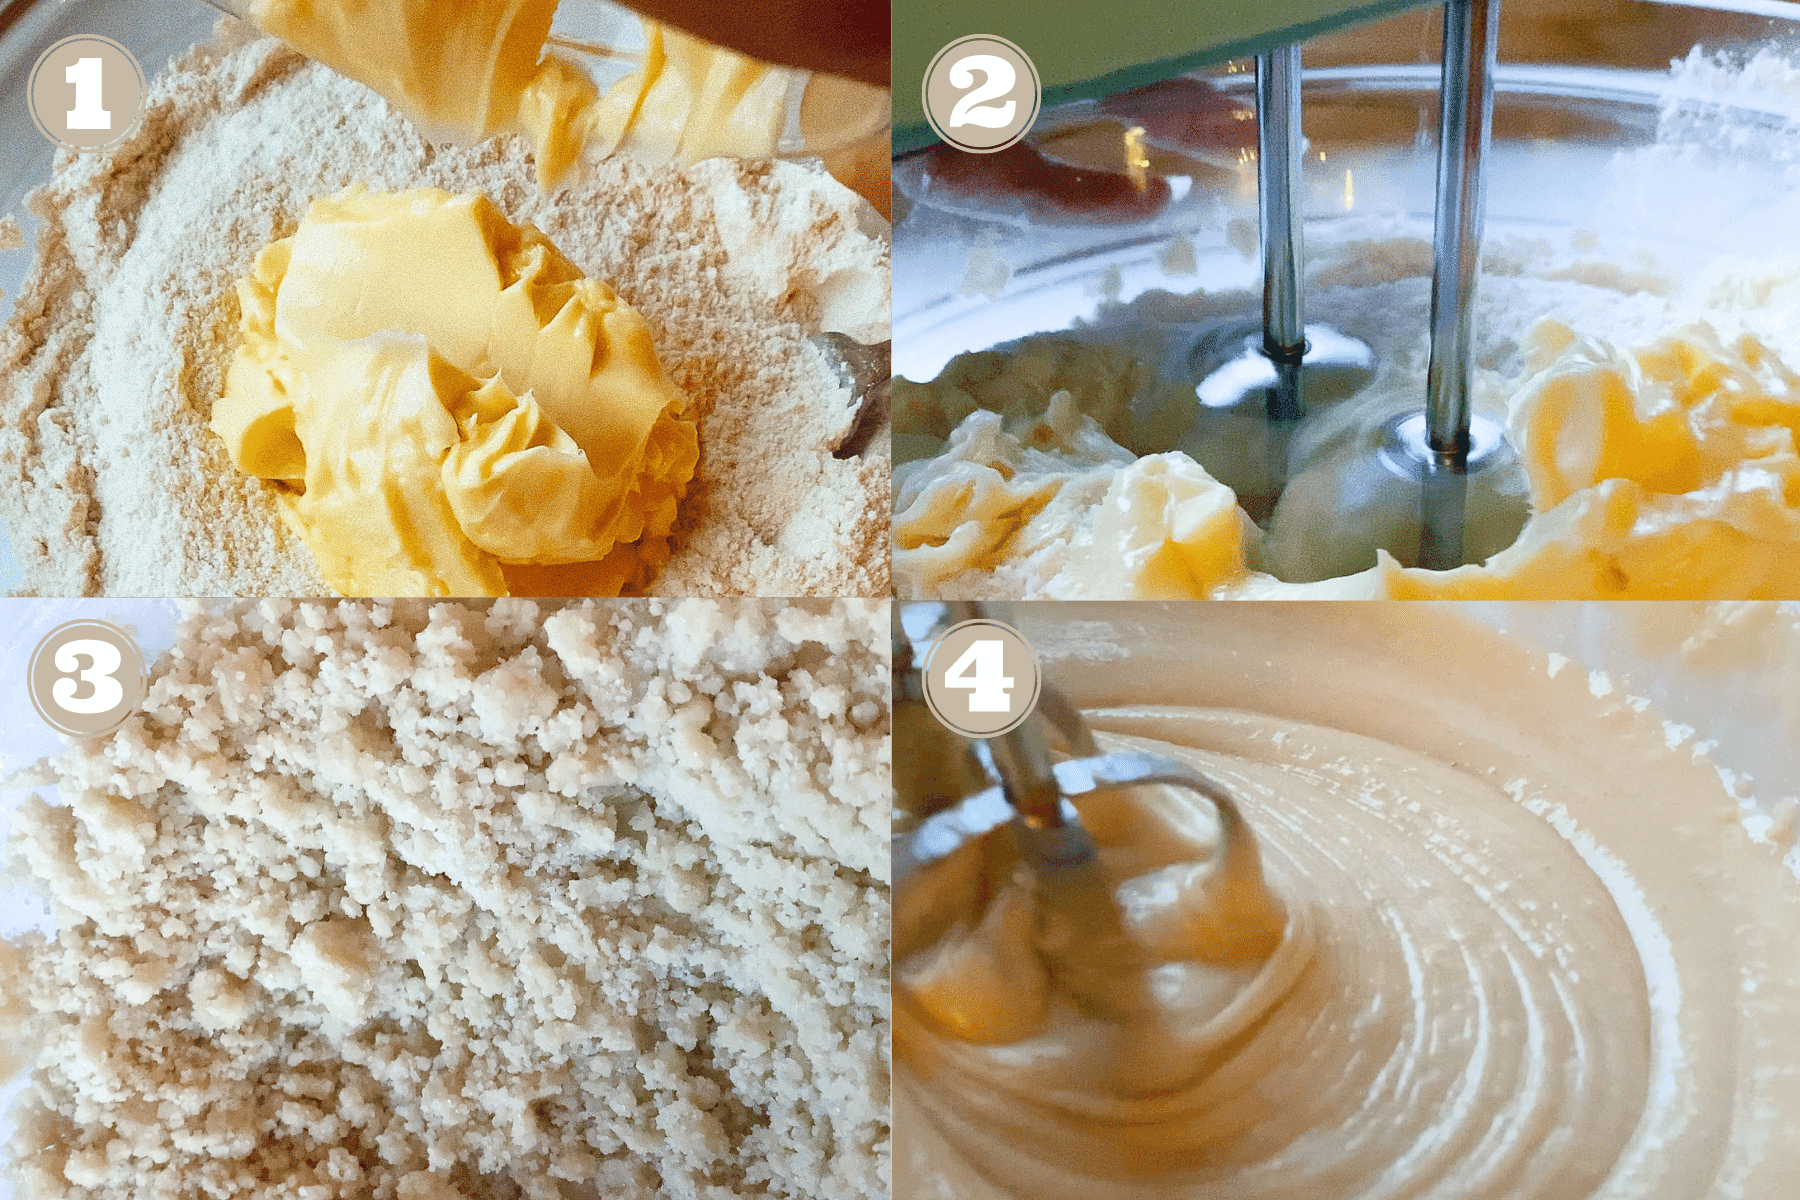 process of making vegan cake batter via reverse creaming